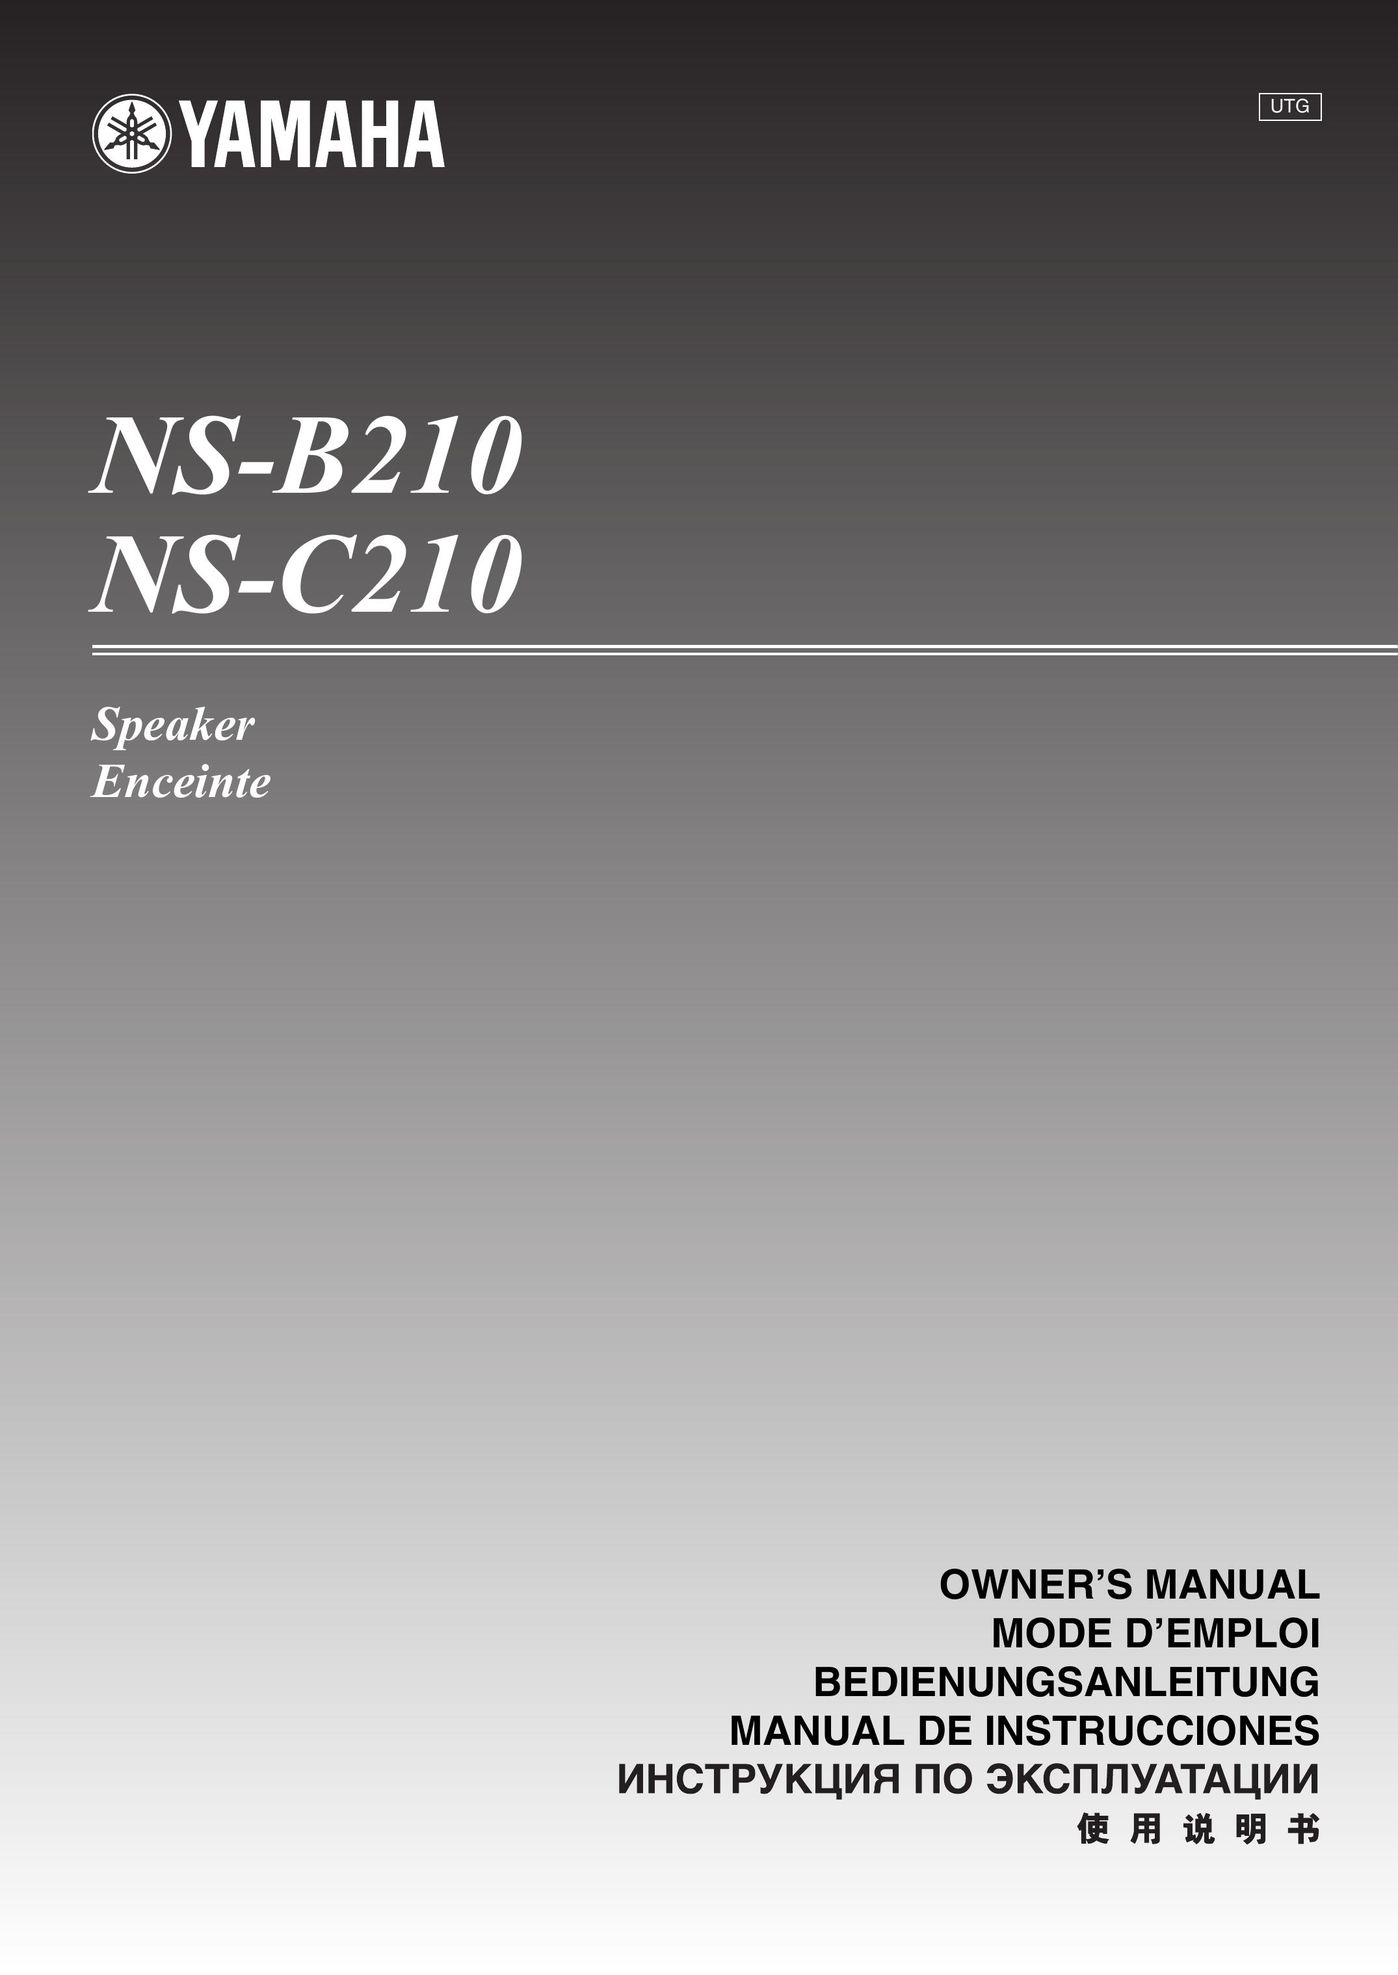 Yamaha NS-B210 Car Speaker User Manual